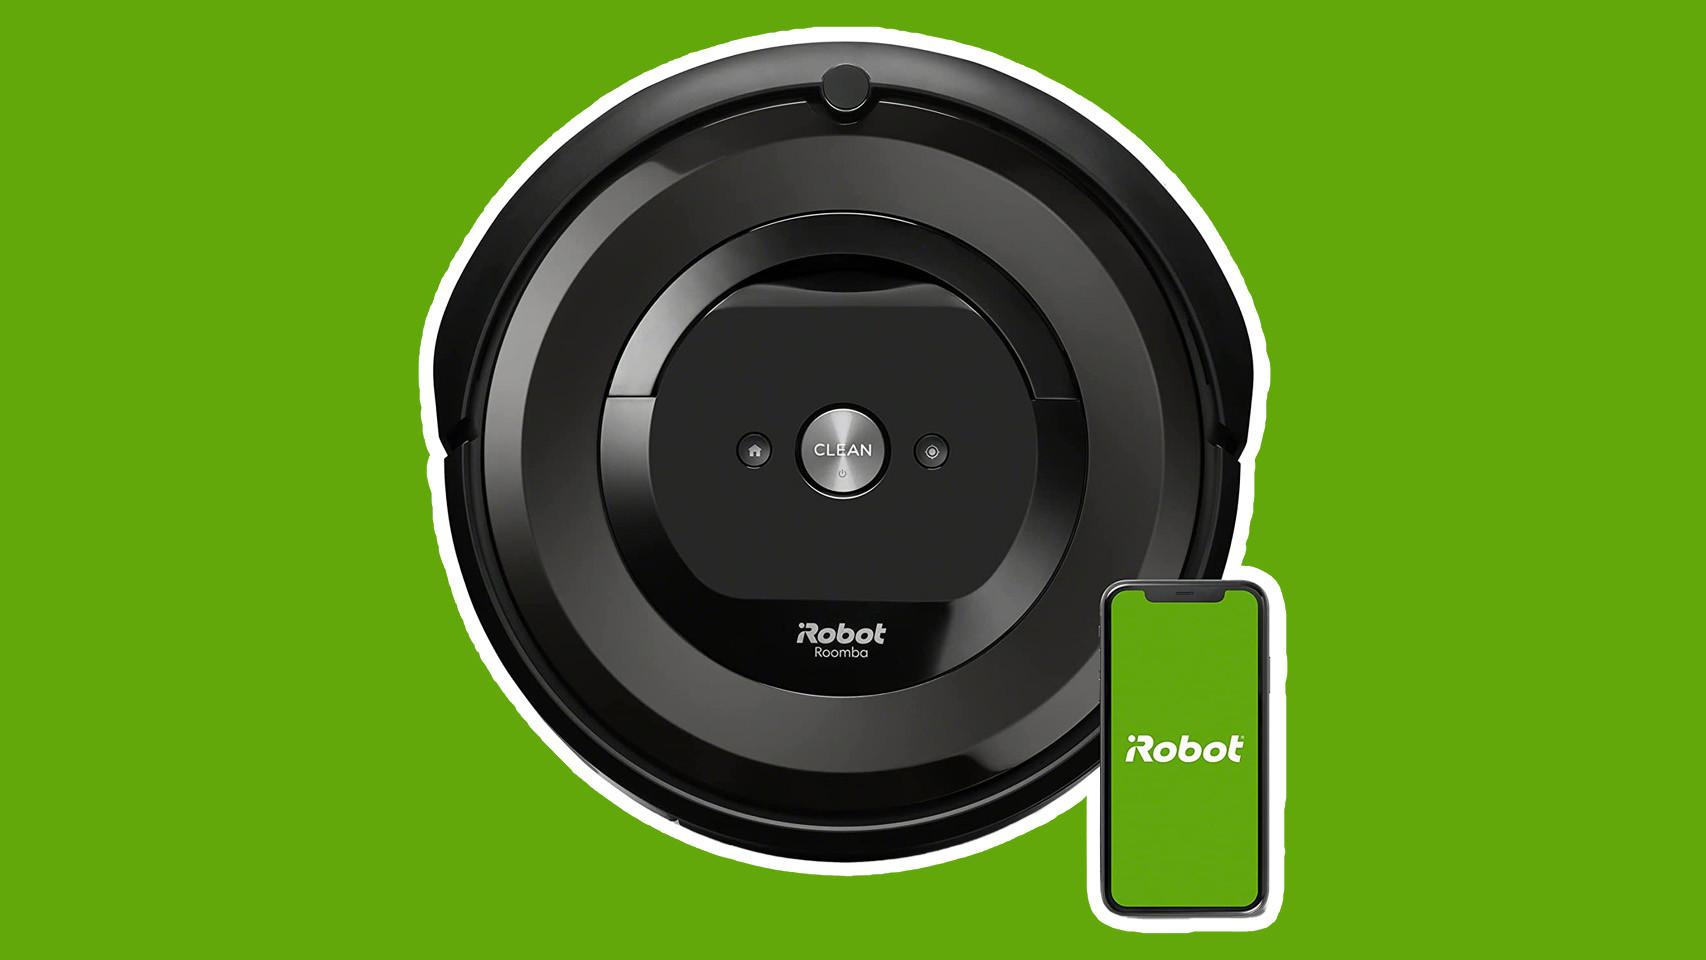 Chollo Black Friday: el Roomba 692 hoy tiene 200 euros de